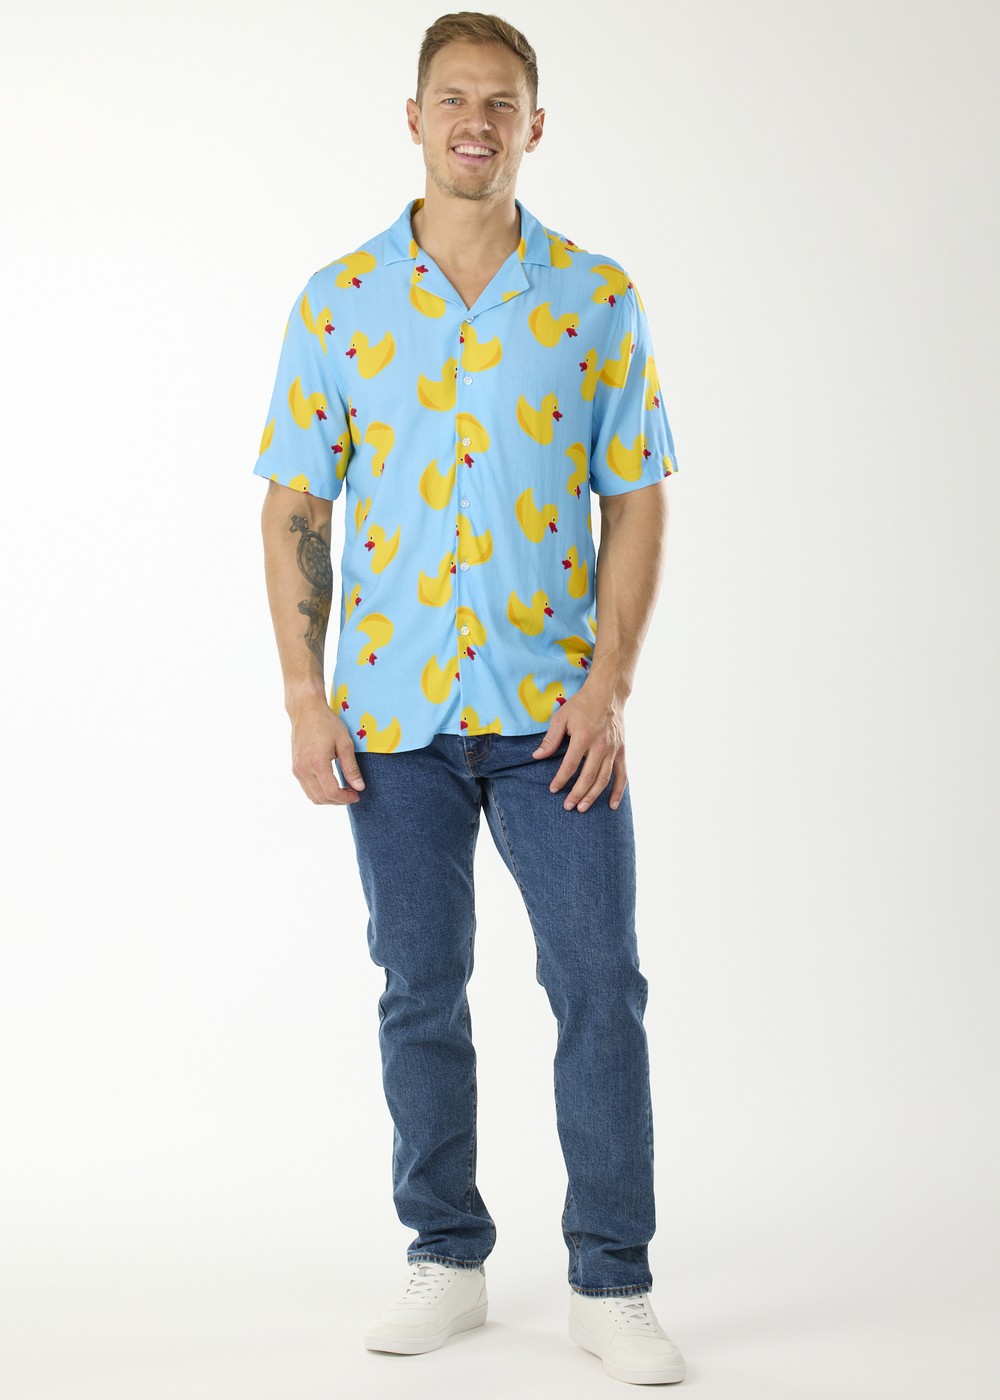 Funny Cute Banana Duck Short Sleeves Hawaiian Shirt